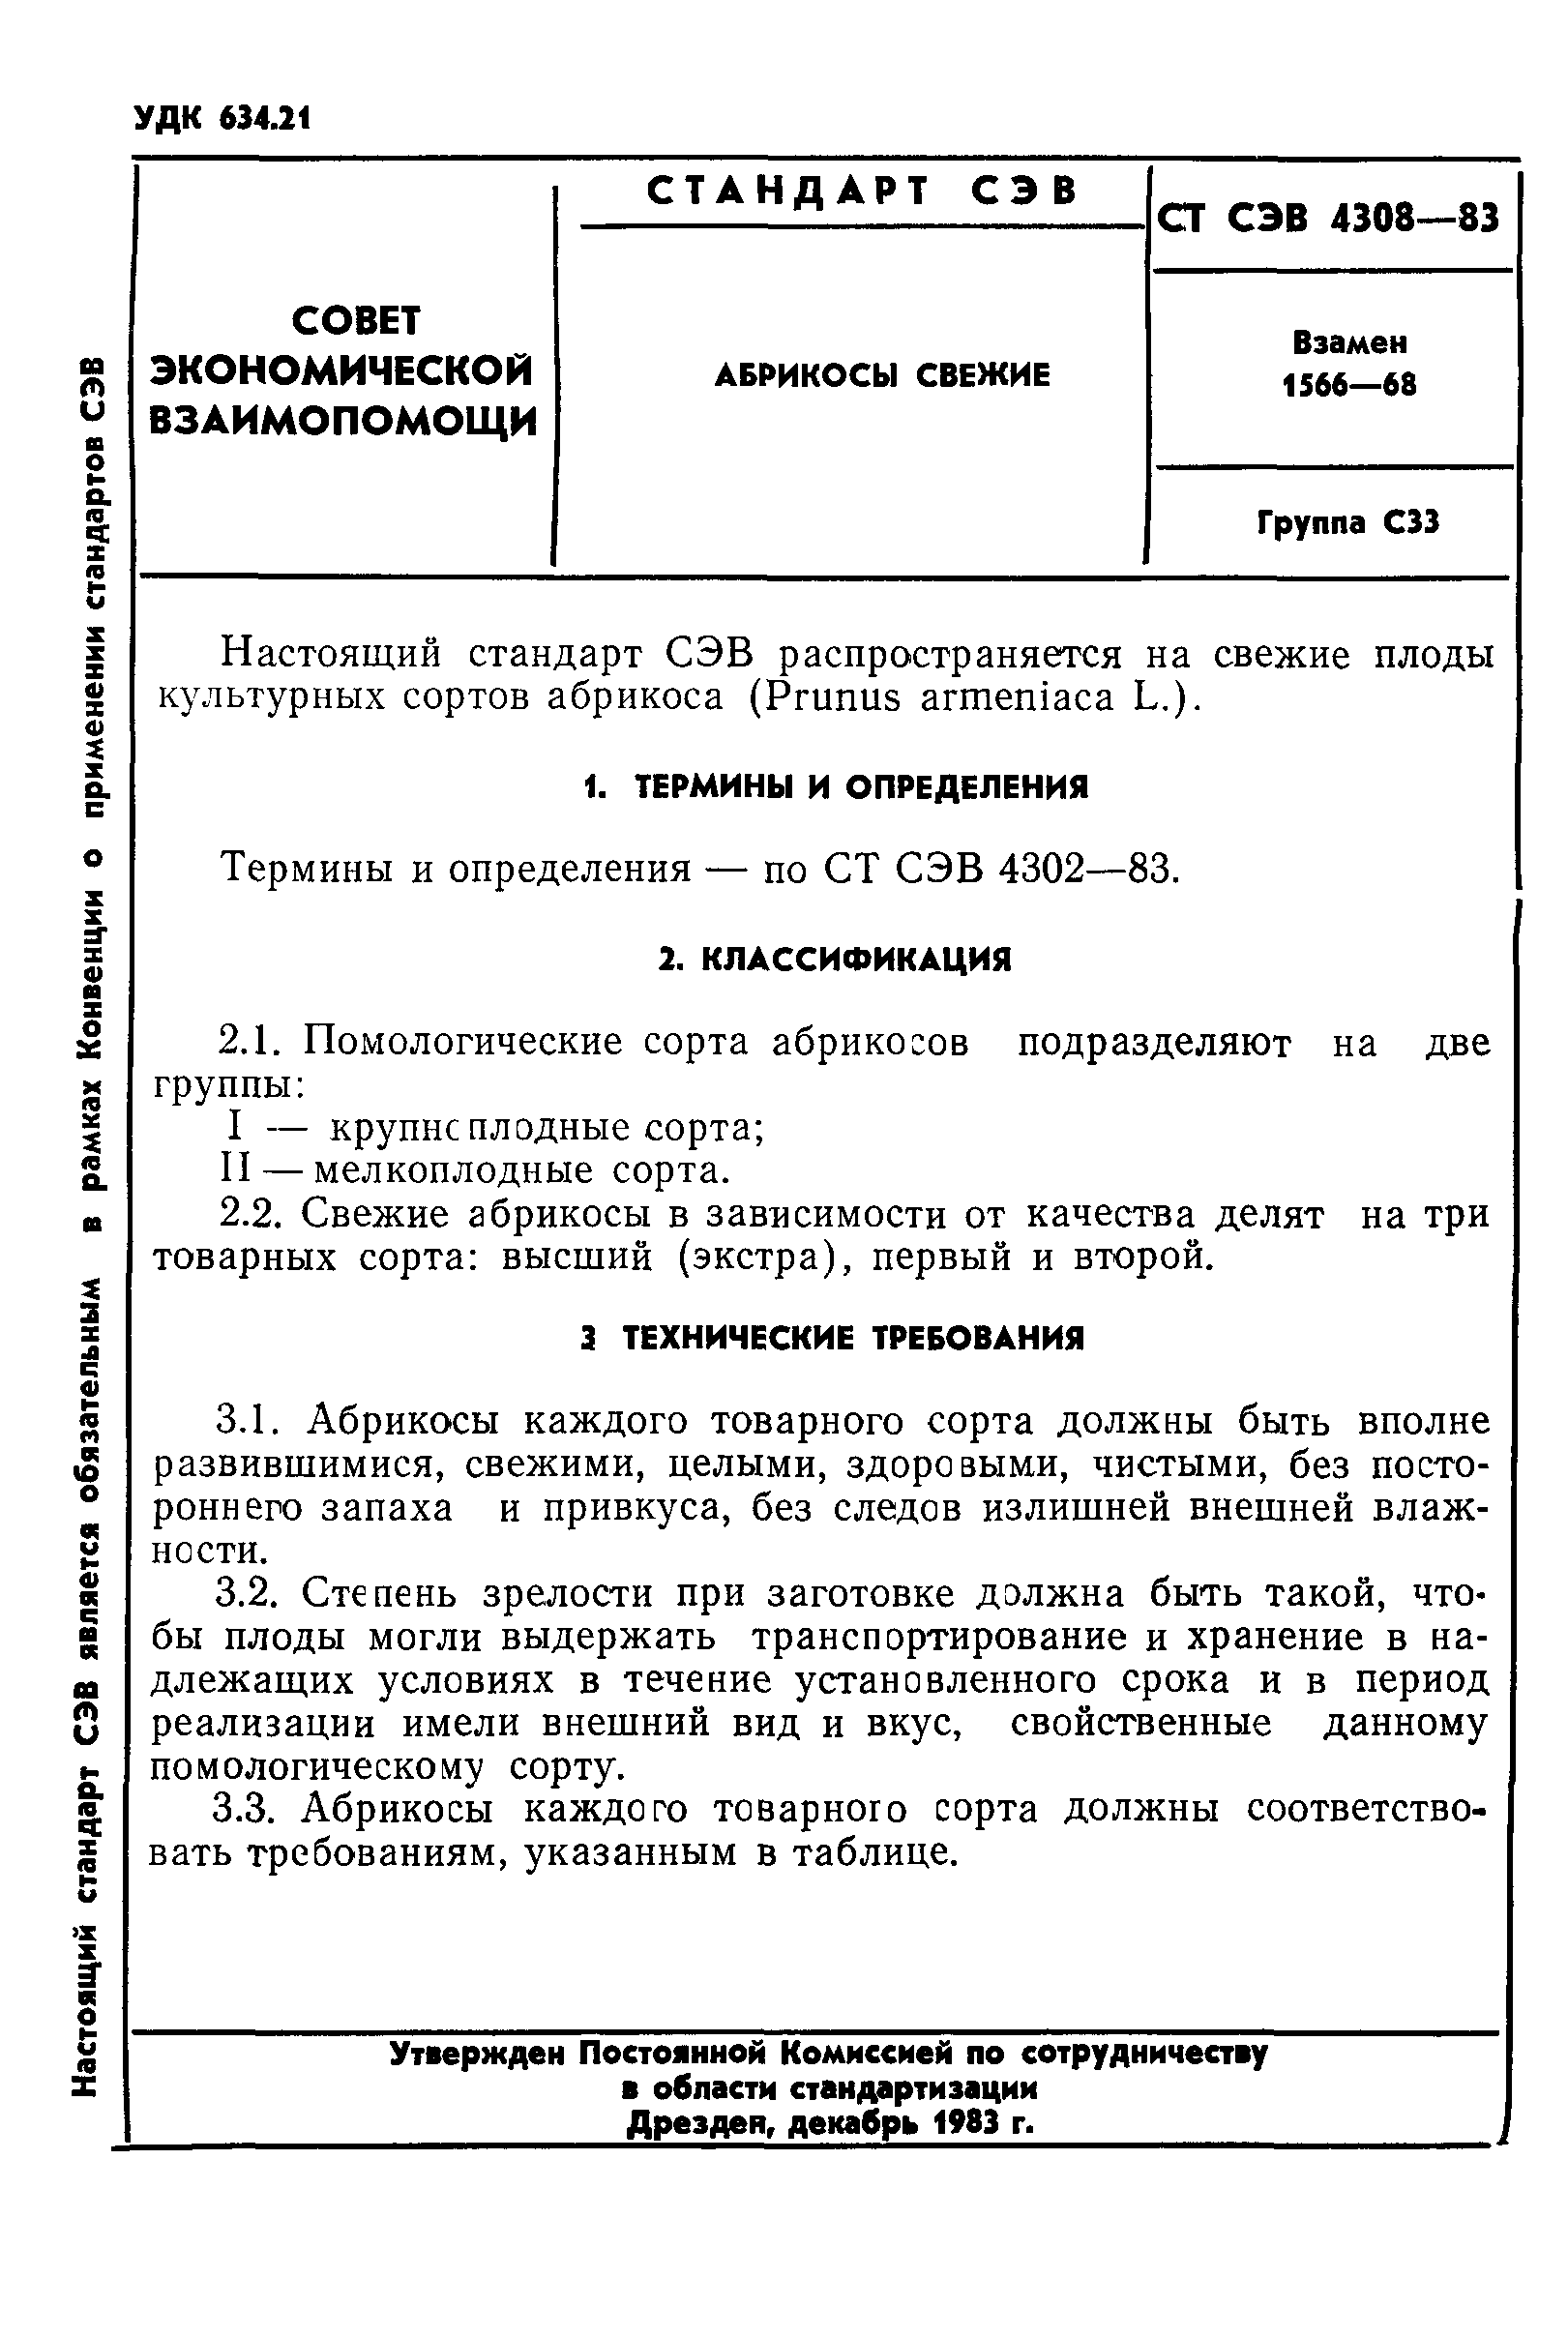 СТ СЭВ 4308-83